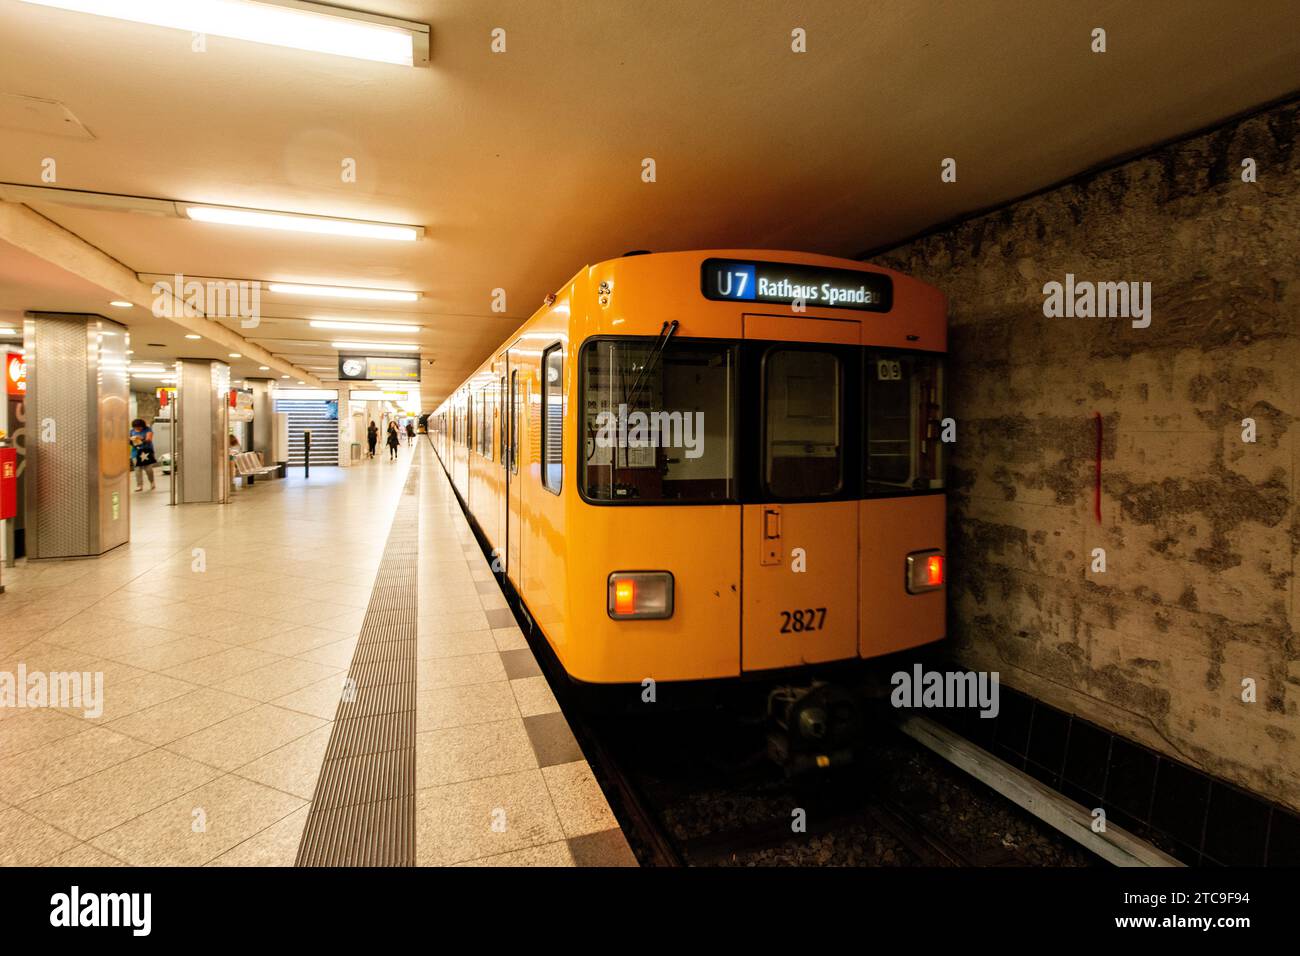 Berlino, Germania. Retrospettiva ma rinnovata metropolitana del treno U-Bahn in una piattaforma della linea U7 tra Spandau nel sud-ovest e Rudow nel sud del Campidoglio tedesco. Foto Stock